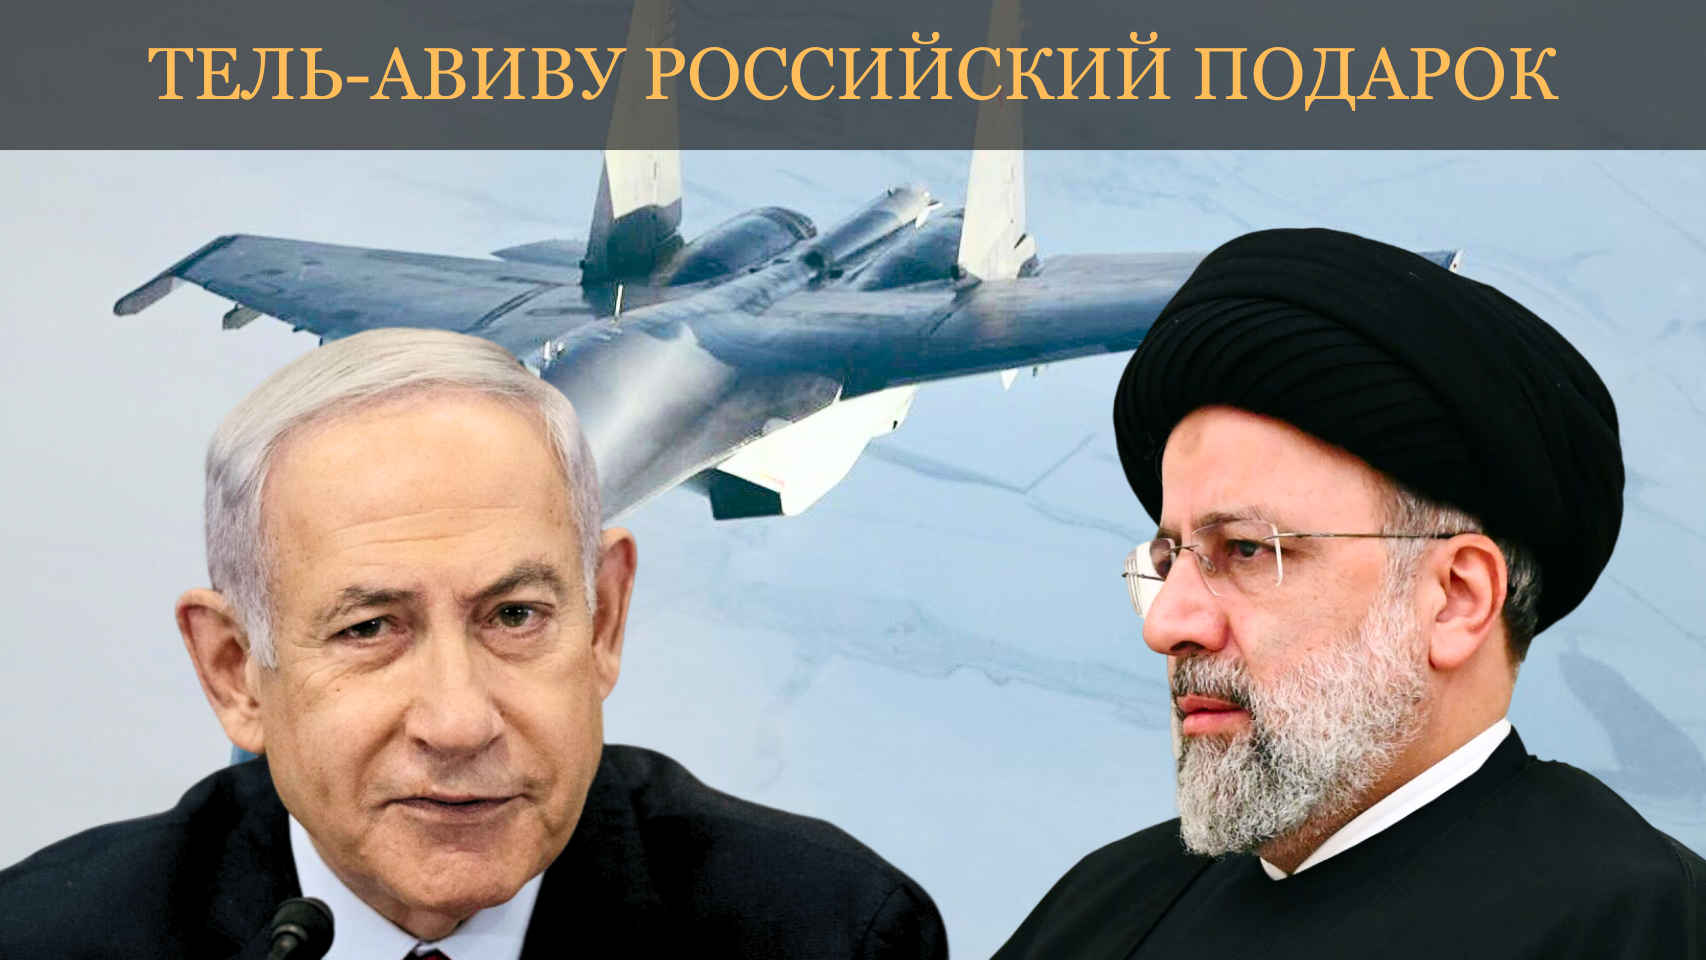 Израиль не удержался от поставки вооружений в Восточную Европу, теперь эшелоны российских Су-35 устремятся в Иран